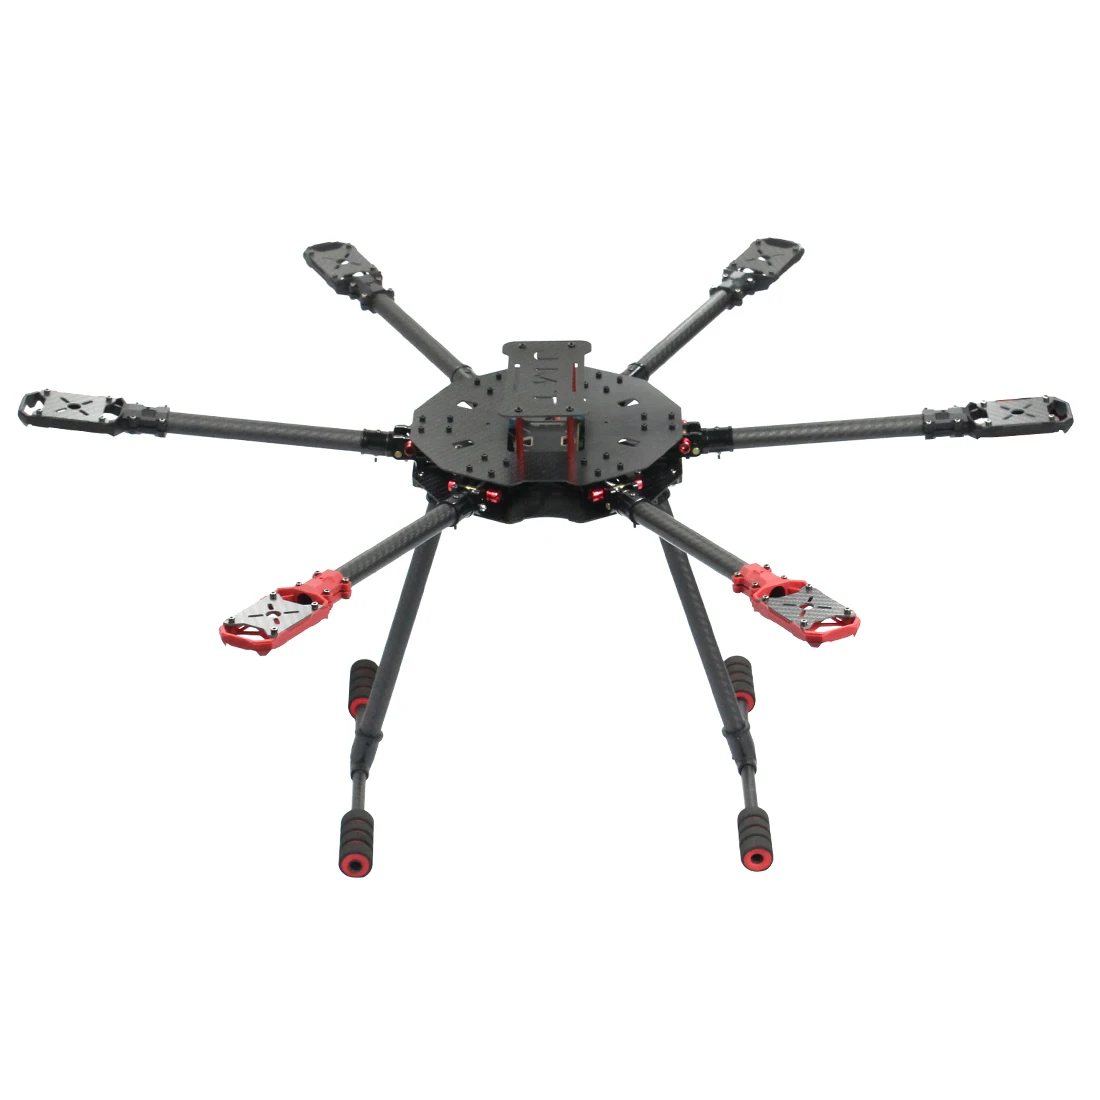 

Saker610 610mm/ Saker675 675mm6-axles Carbon Fiber Fold Rack DIY RC Drone Hexacopter Frame Kit with Landing skid Motor Mount